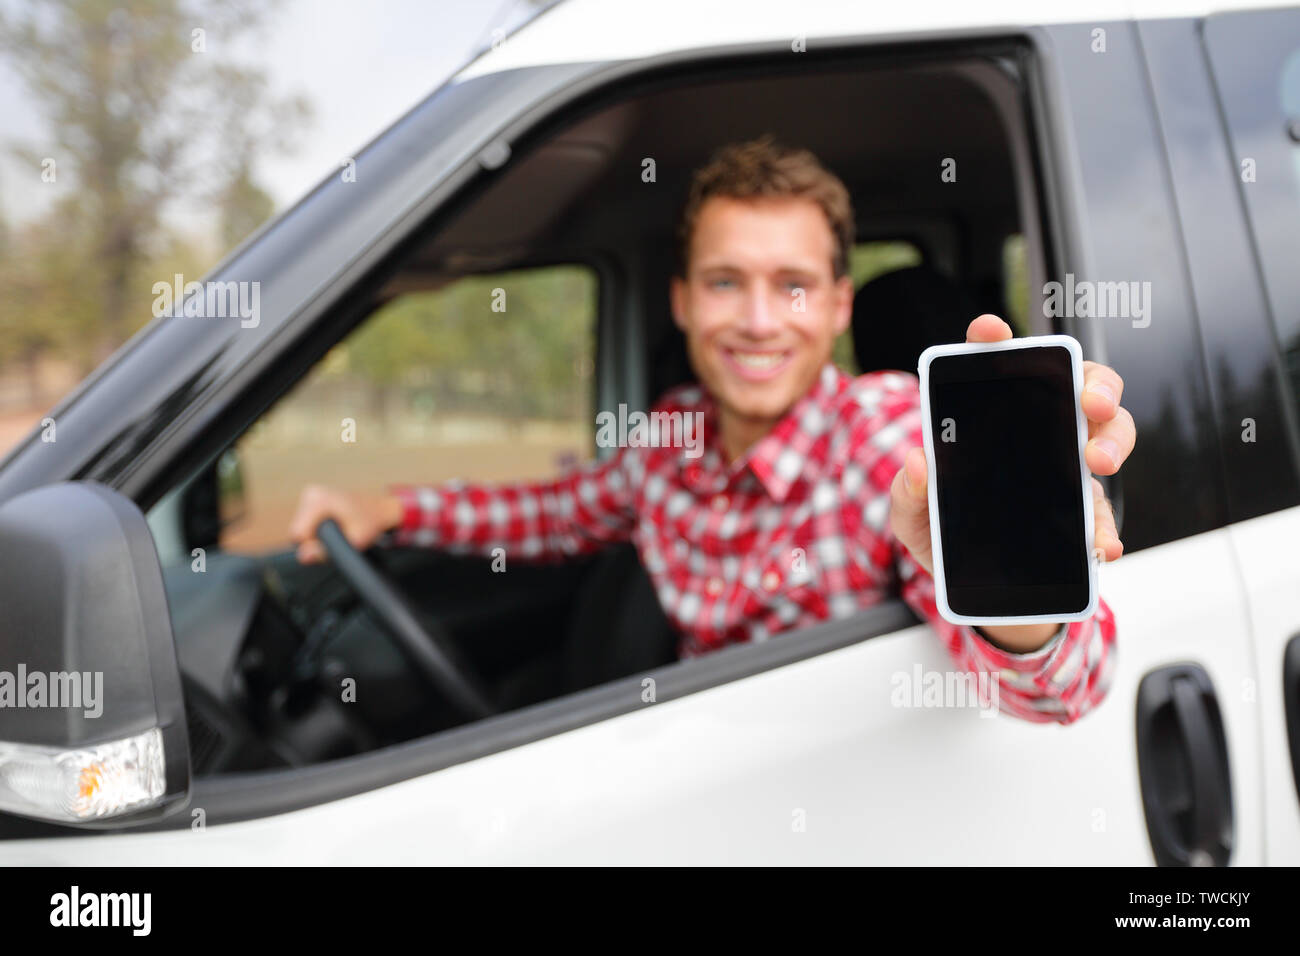 Smart phone uomo in car guida che mostra il display dello smartphone sorridendo felice. Driver maschio utilizzando le app che mostra vuoto nella schermata vuota seduto nel sedile di guida. Focus sul telefono cellulare. Foto Stock